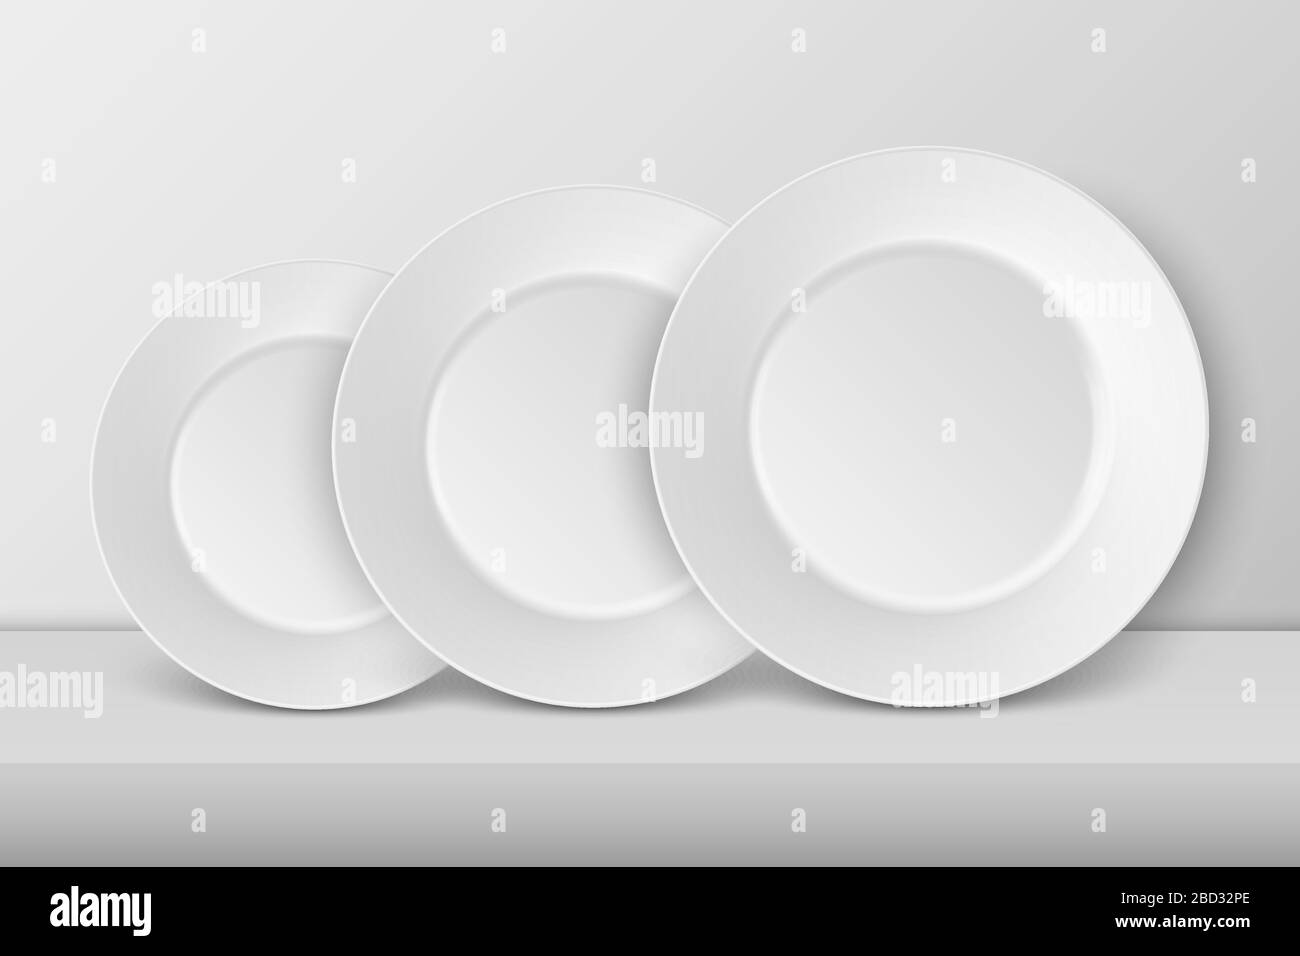 Vector 3d realistische Weißporzellan-Speise-Platte in unterschiedlicher Größe Closeup. Vorderansicht. Designvorlage, Mock up for Graphics, Branding Identity Stock Vektor